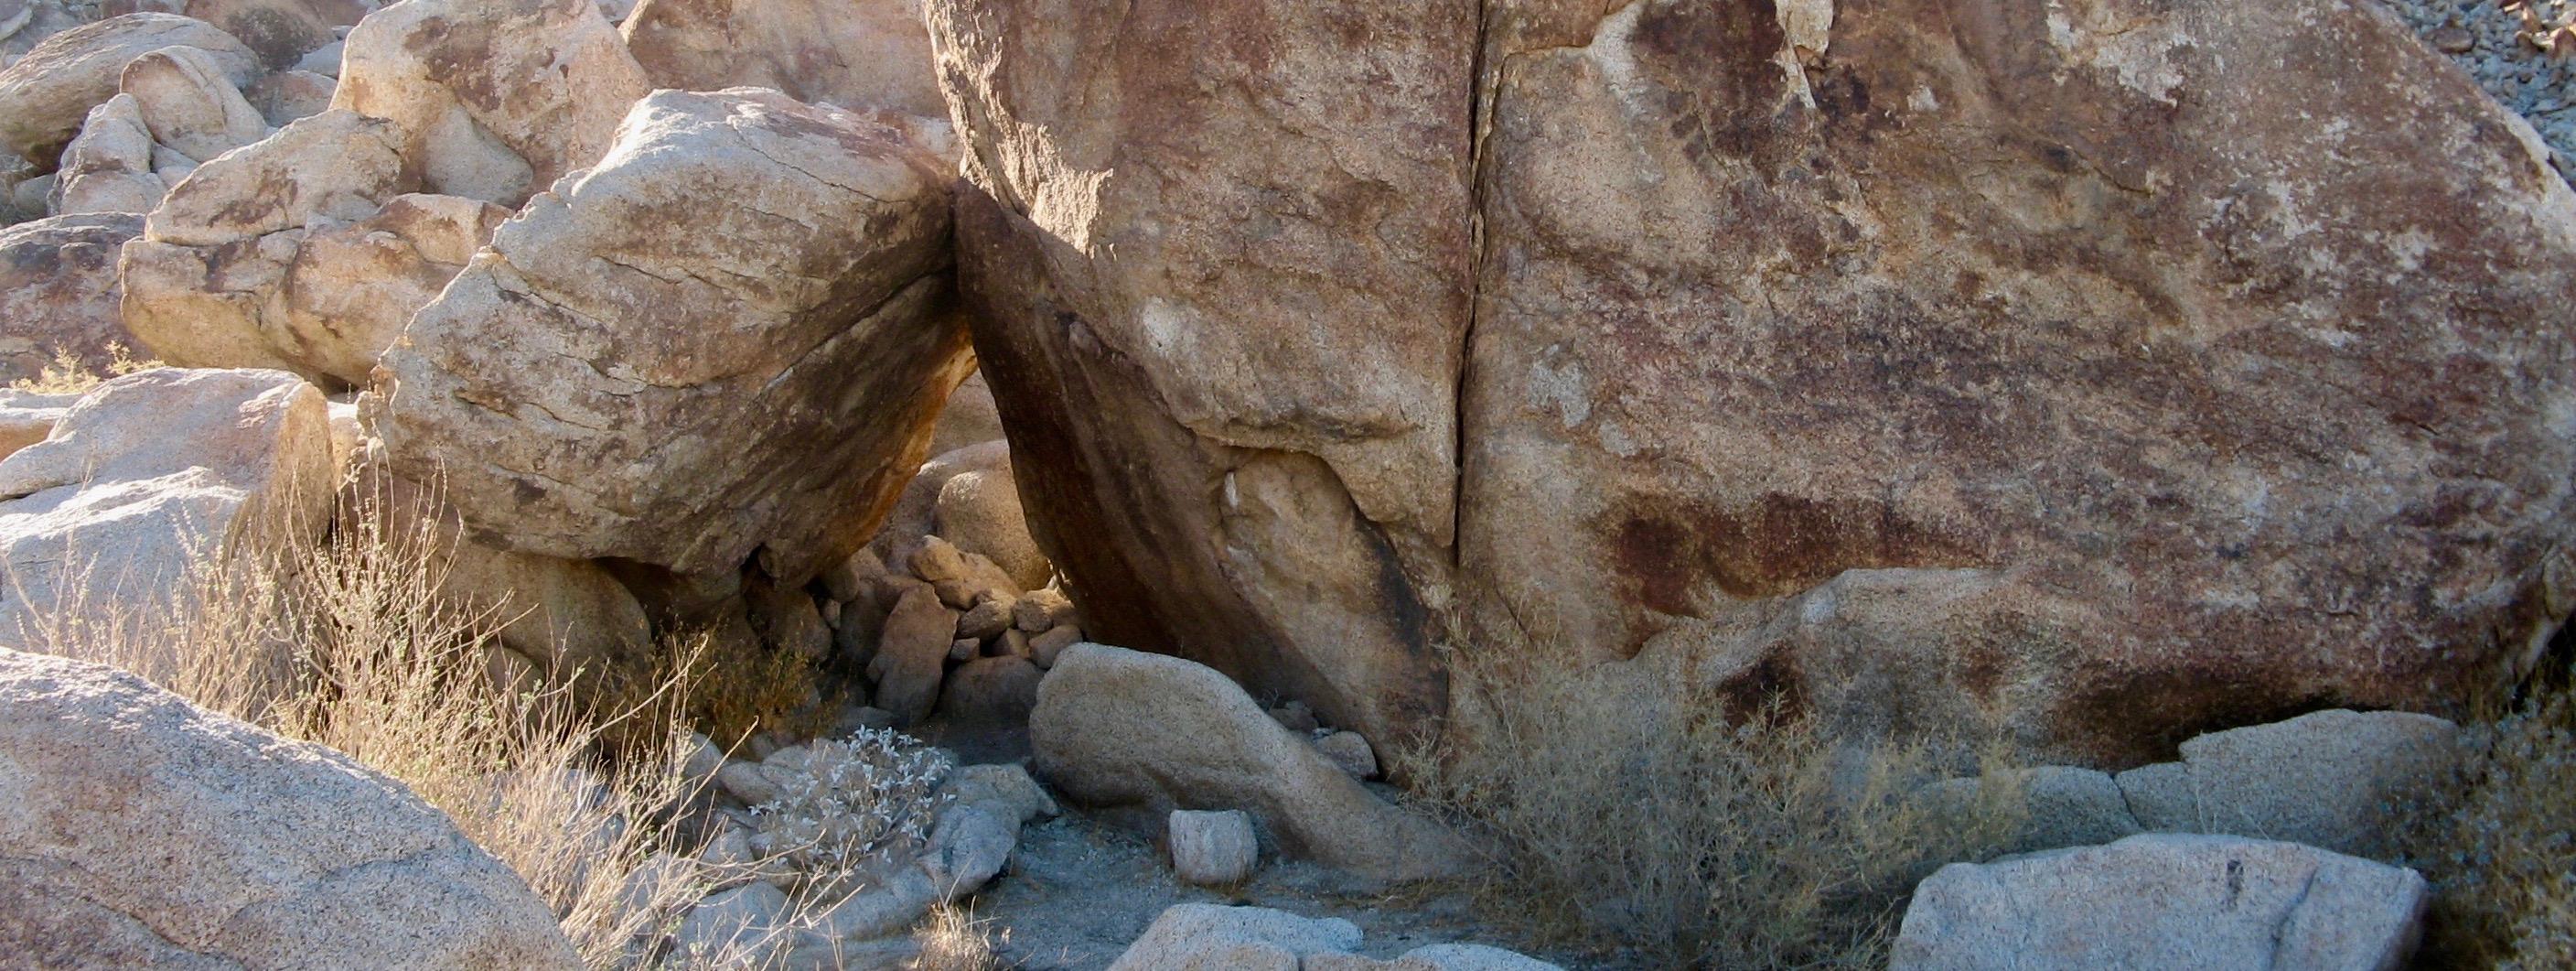 Rock shelter in desert